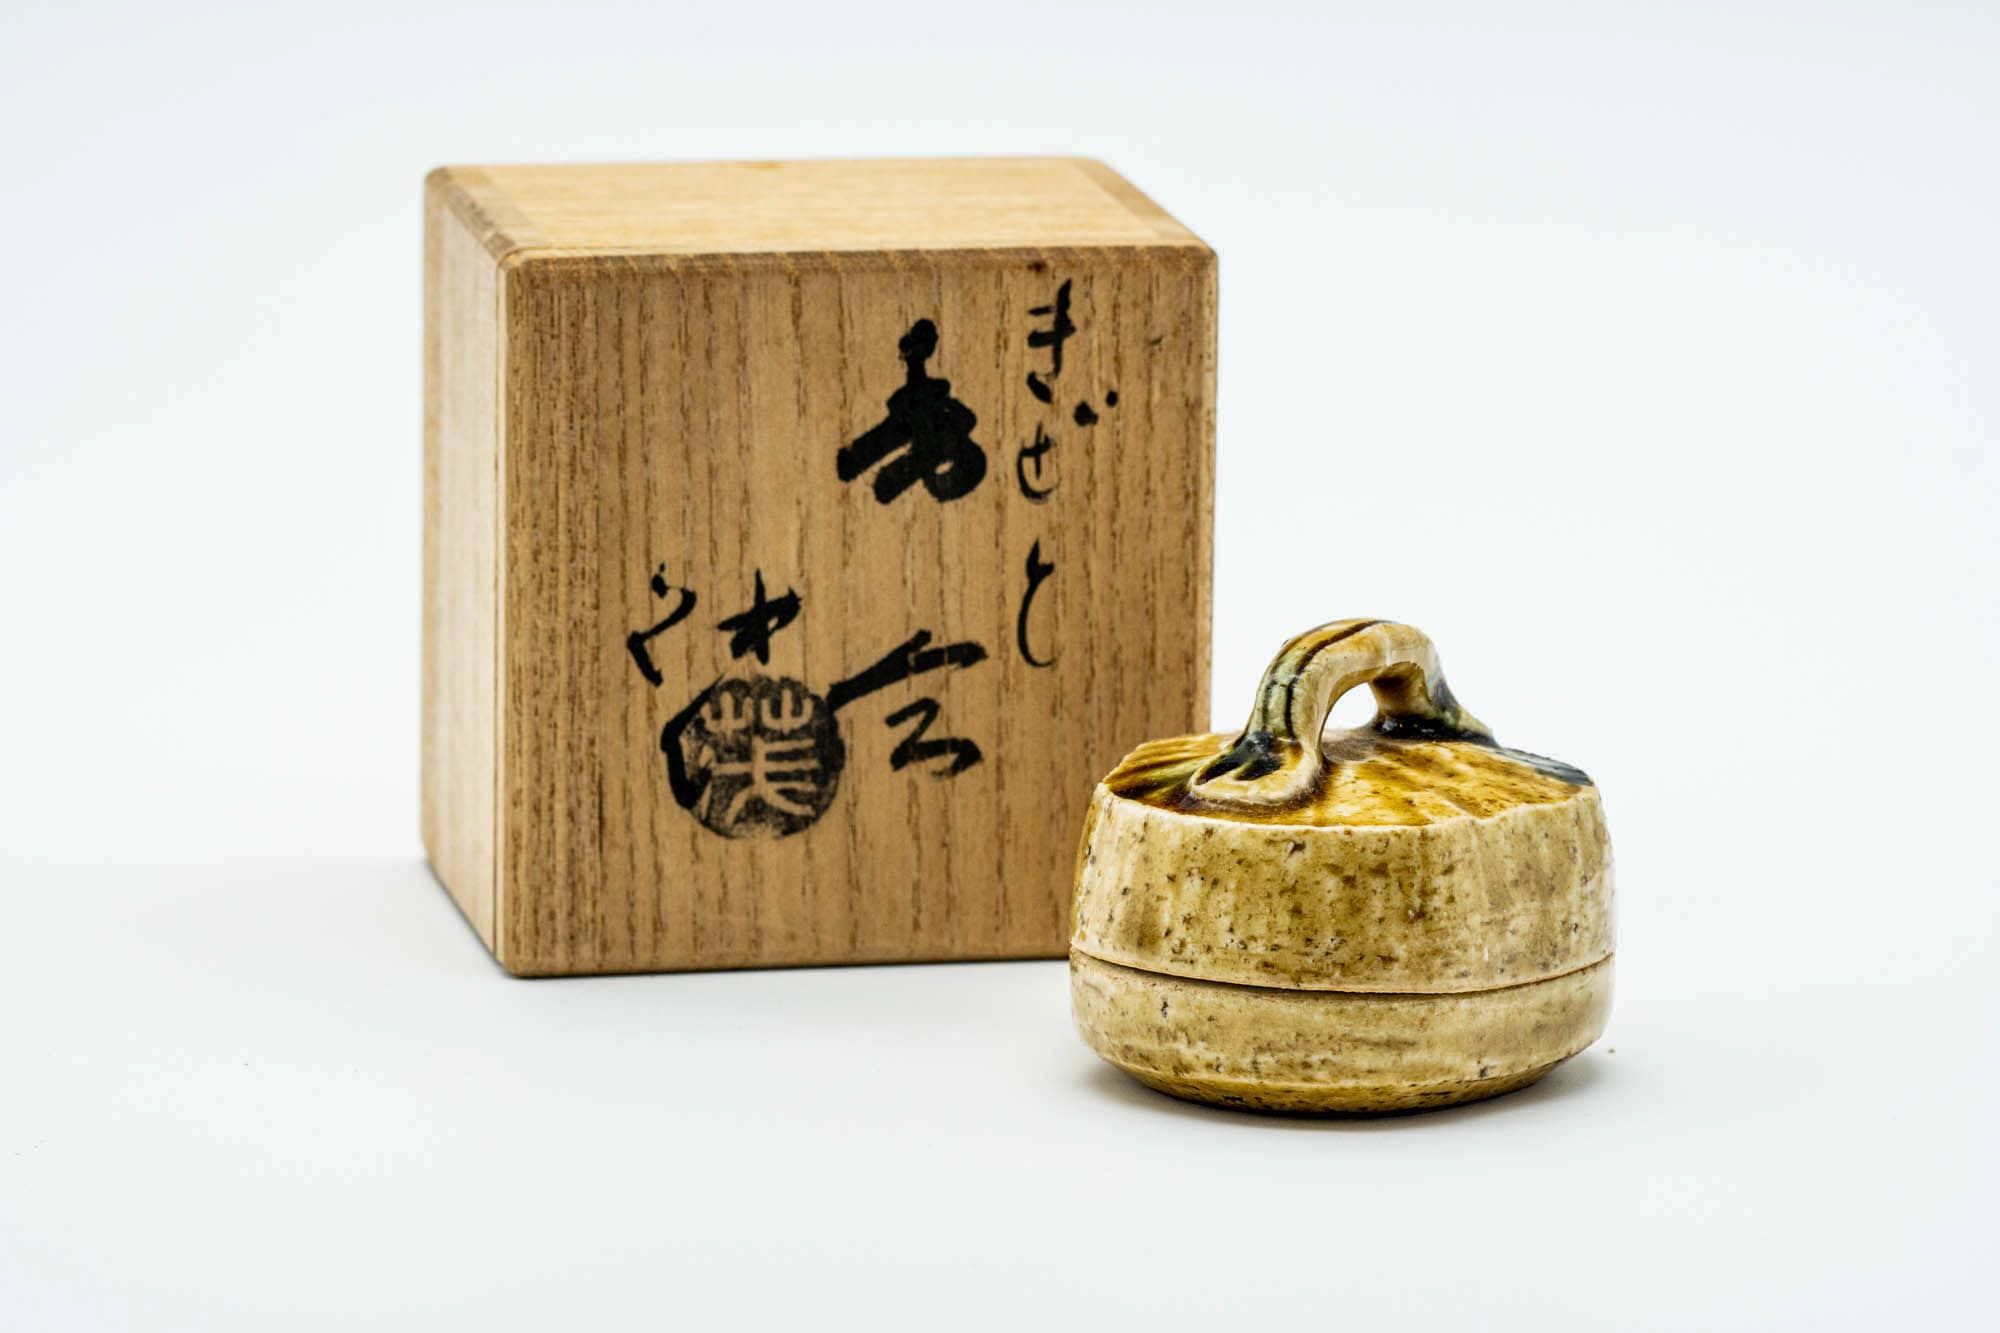 Japanese Kogo - 山口茂 Shigeru Yamaguchi - Basket Seto-yaki Incense Container